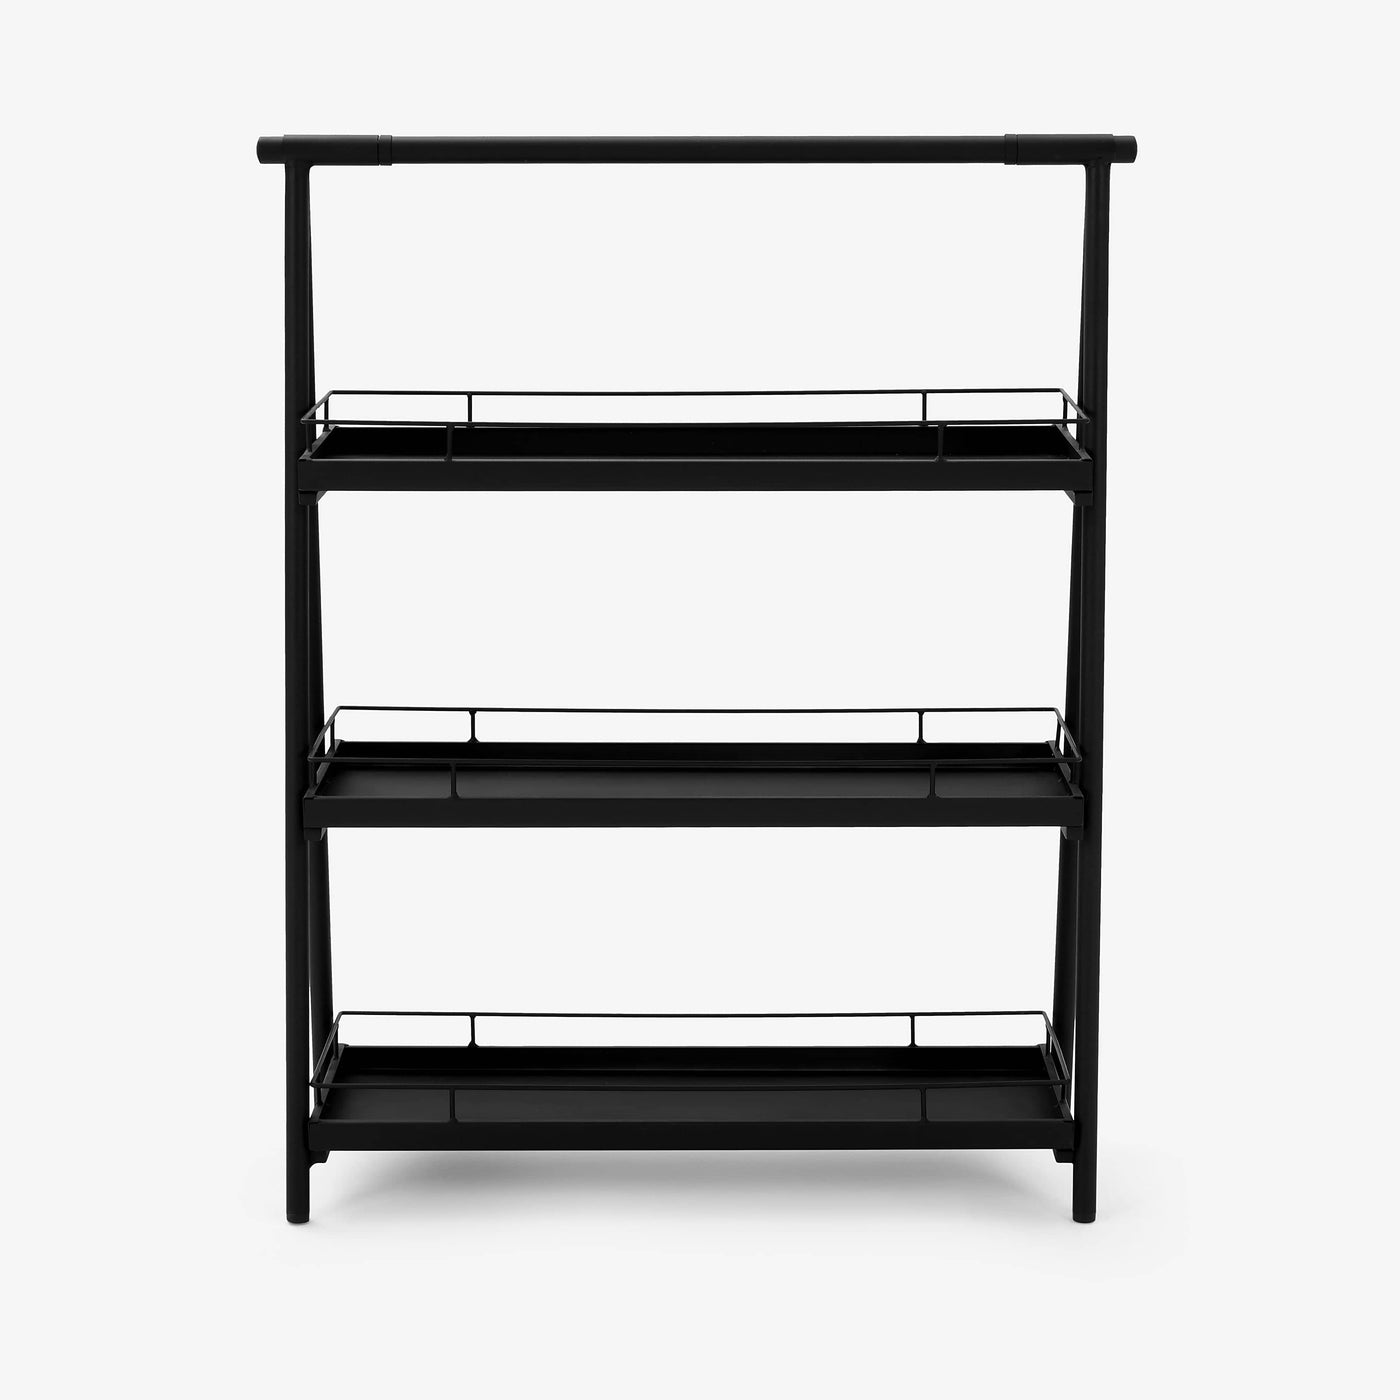 Trerostar Metal Shelf, Black Bookcases & Shelving Units sazy.com